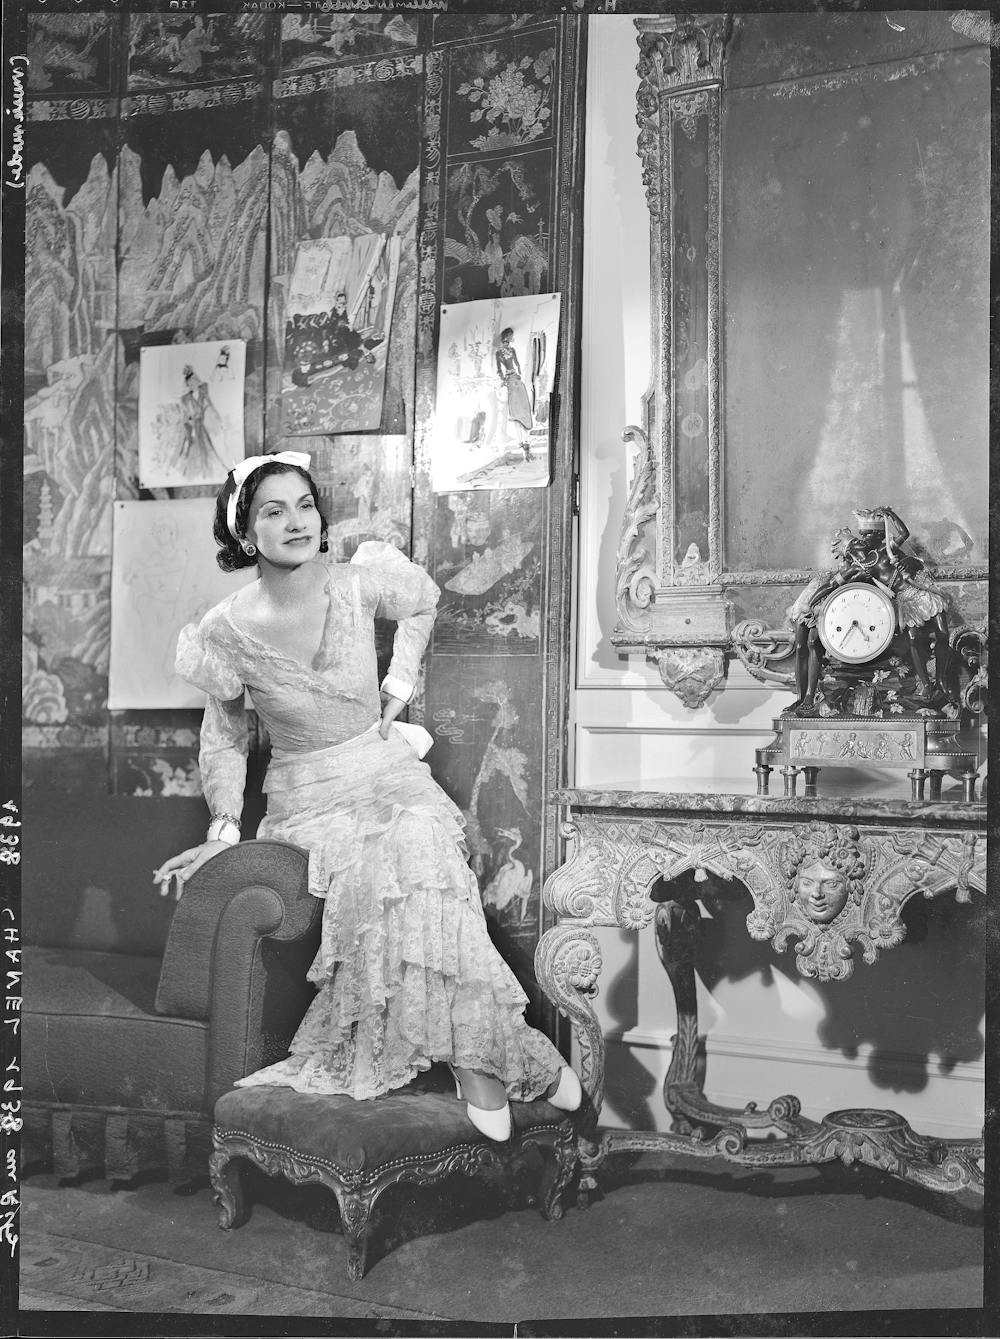 Coco Chanel  Fashion and Decor: A Cultural History